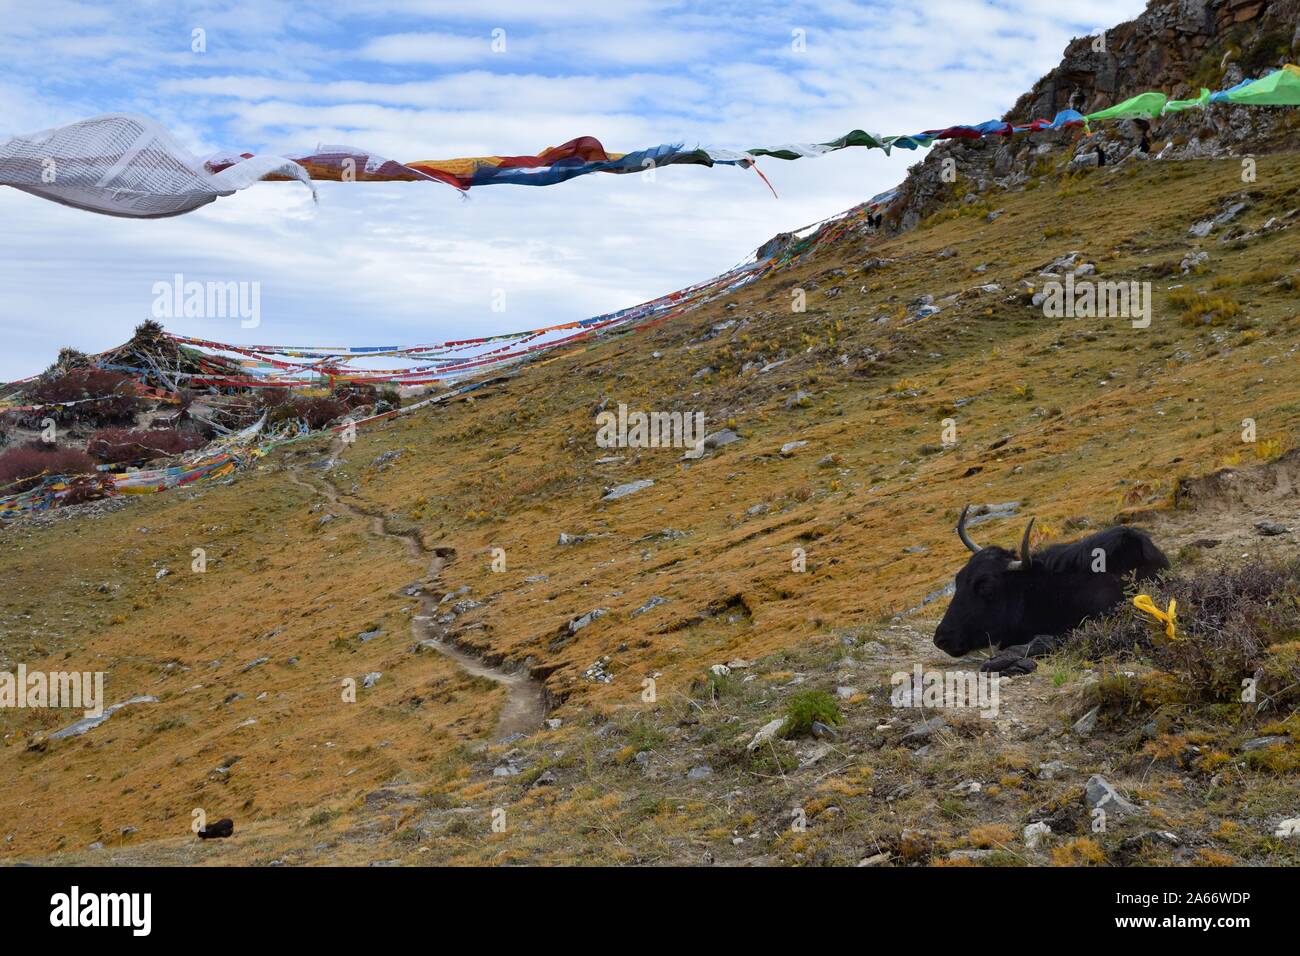 Wild Yak prende un periodo di riposo in tibetano terreni di pascolo. Preghiera tibetano bandiere in background. Foto Stock